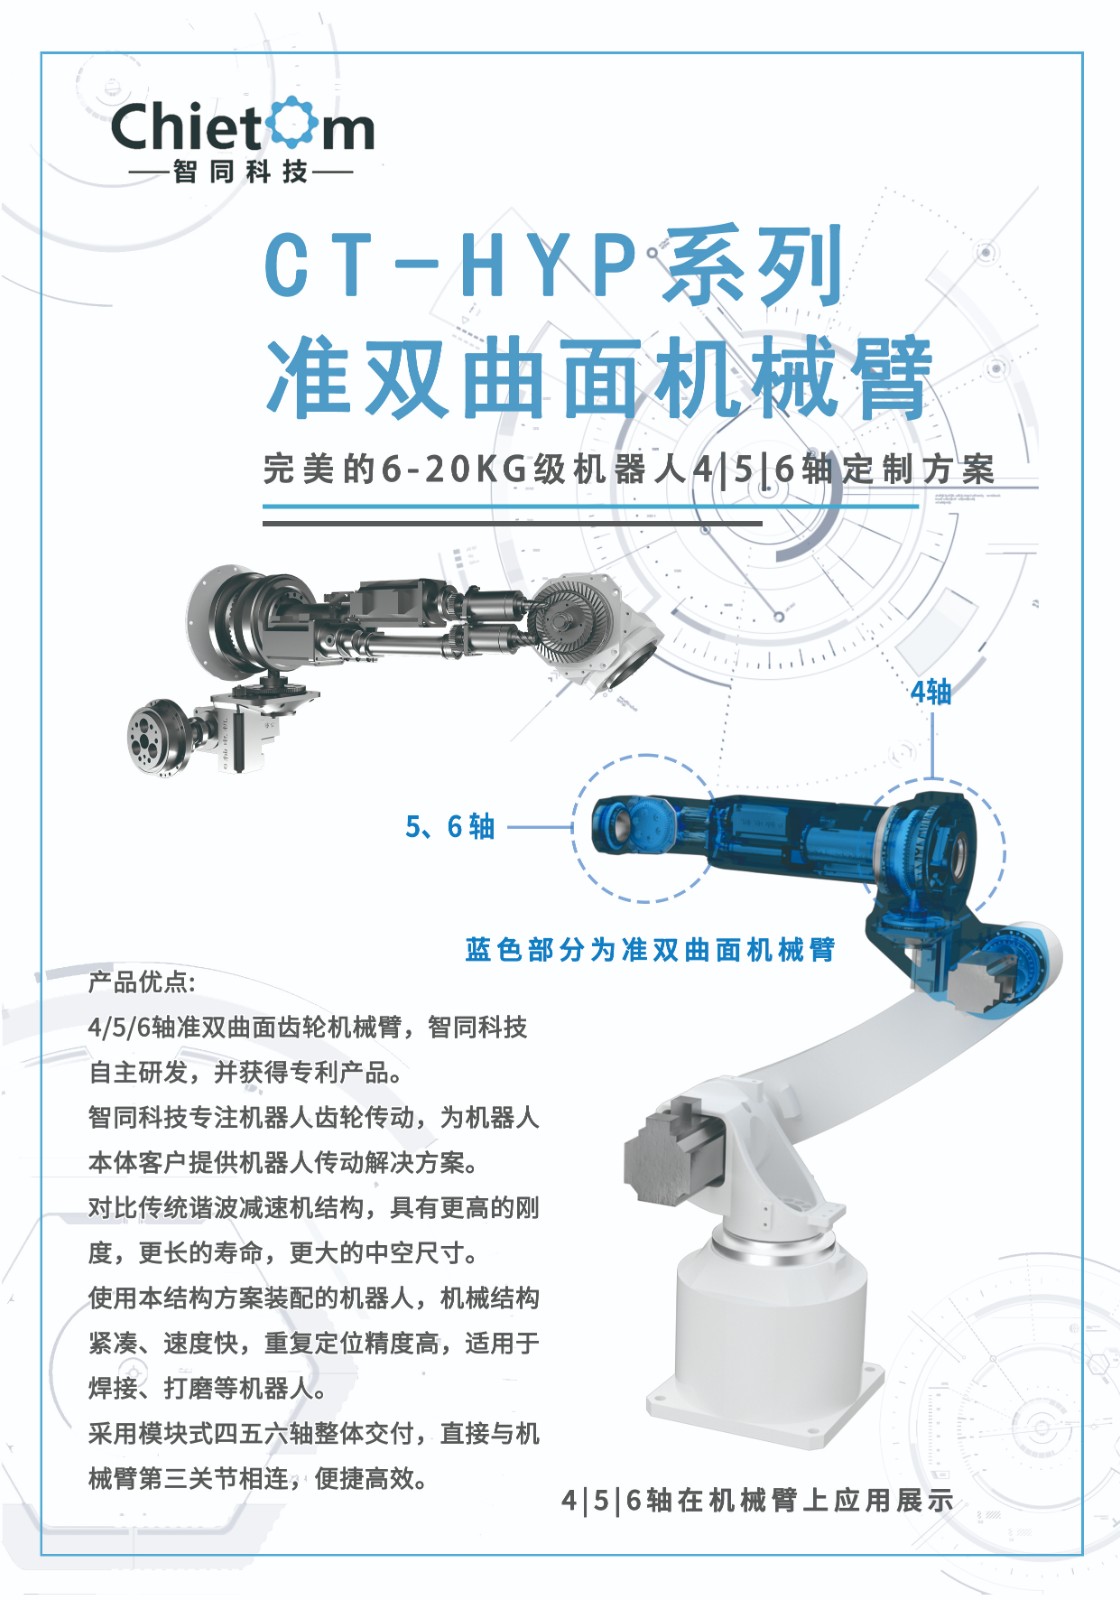 喜报-智同科技荣获维科杯·OFweek 2022中国机器人行业年度优秀创新产品奖